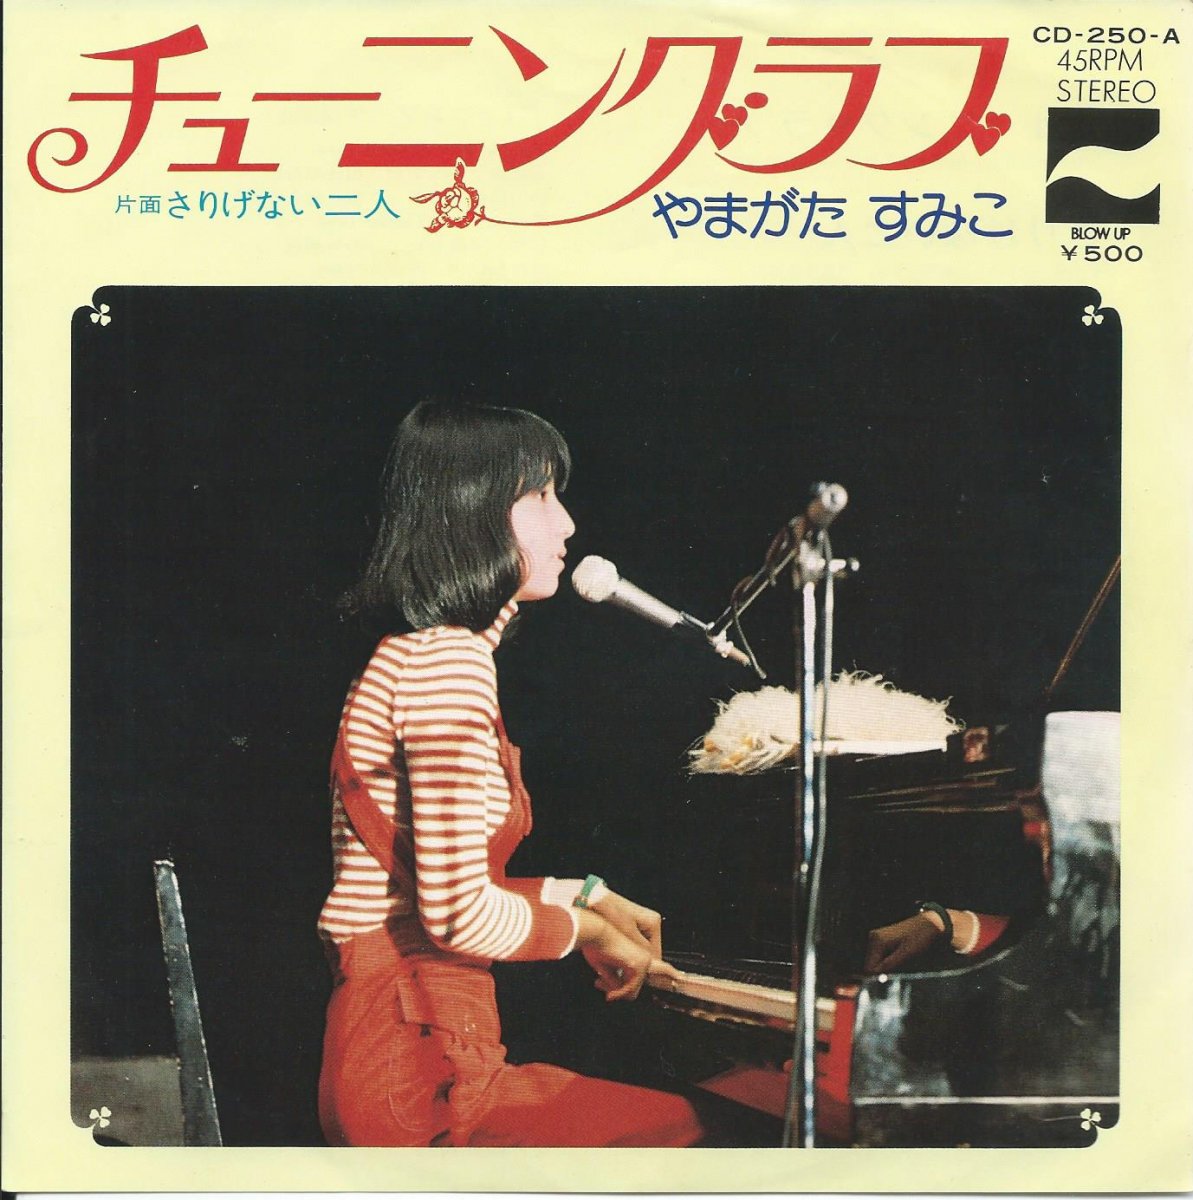 やまがたすみこ SUMIKO YAMAGATA チューニング・ラブ さりげない二人 (7") HIP TANK RECORDS